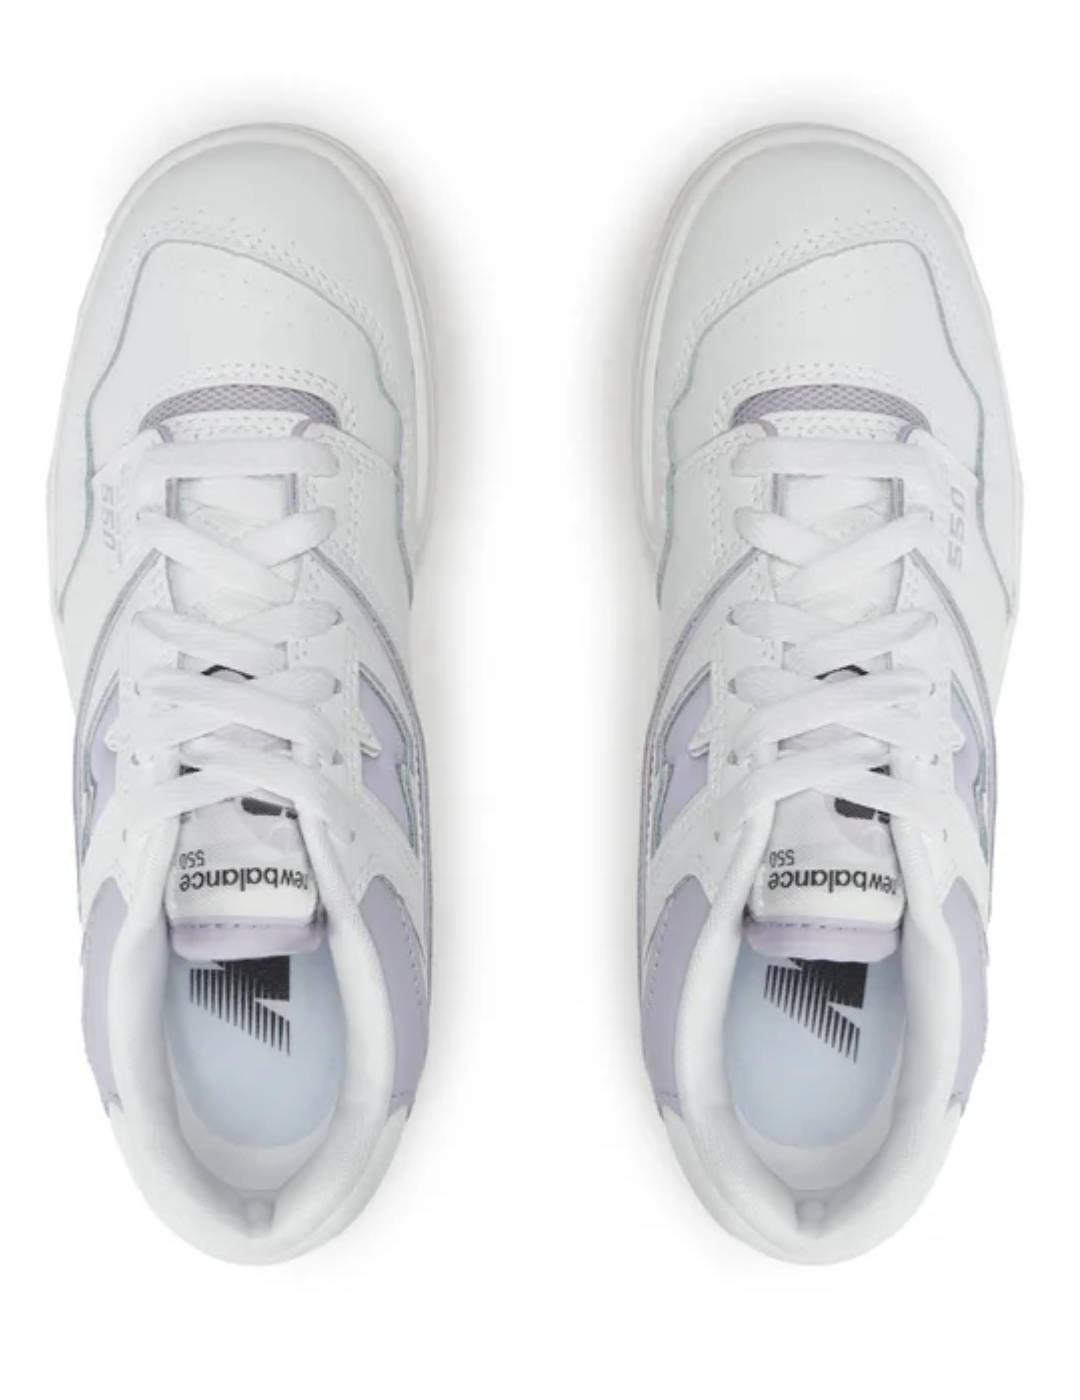 Zapatillas New Balance 550 blanca y lila mujer-Se